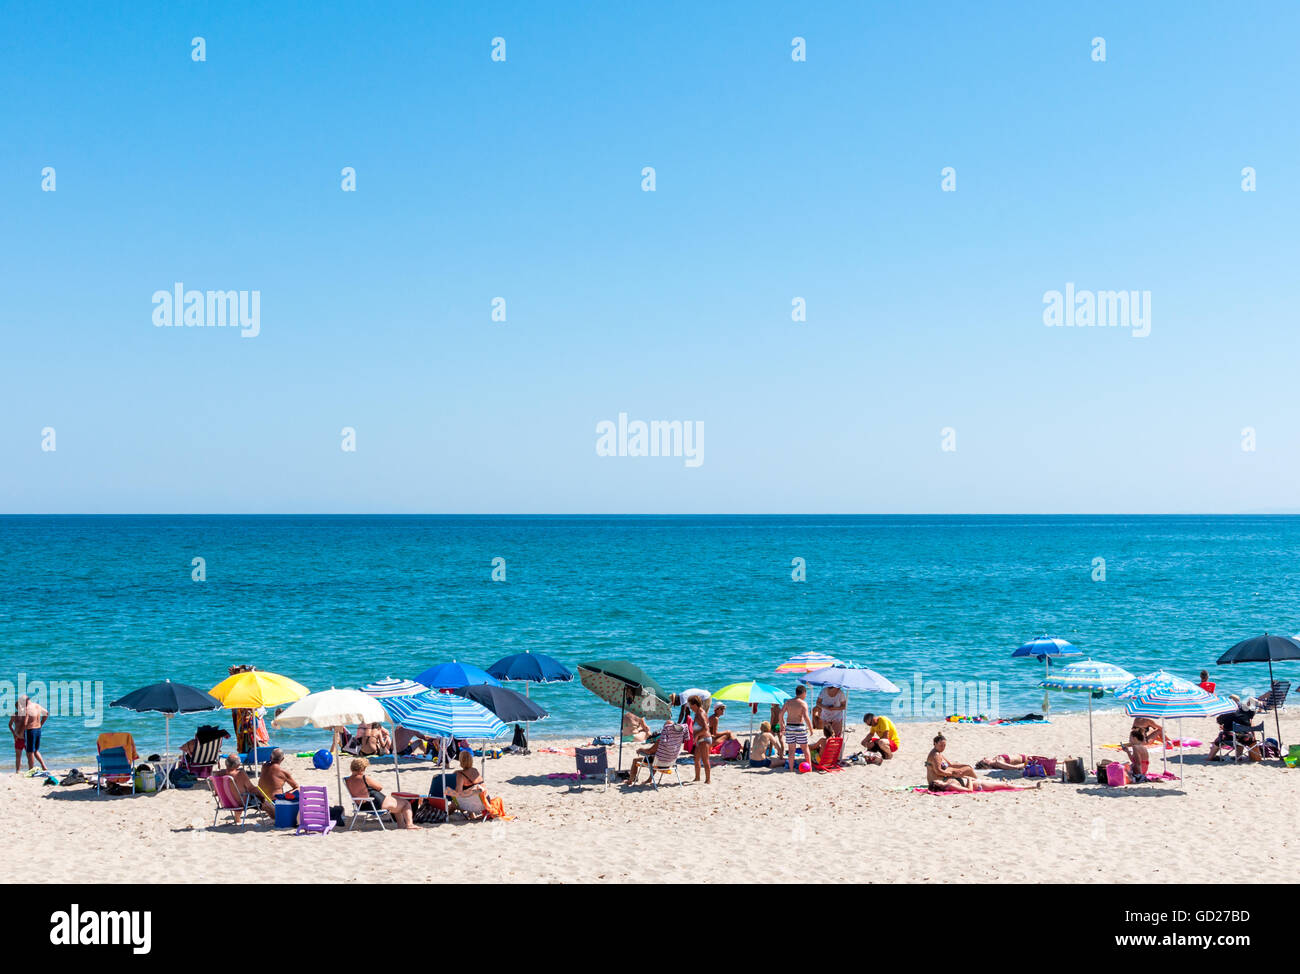 Affollata spiaggia di Platamona, nel golfo dell' Asinara - Sardegna Foto Stock